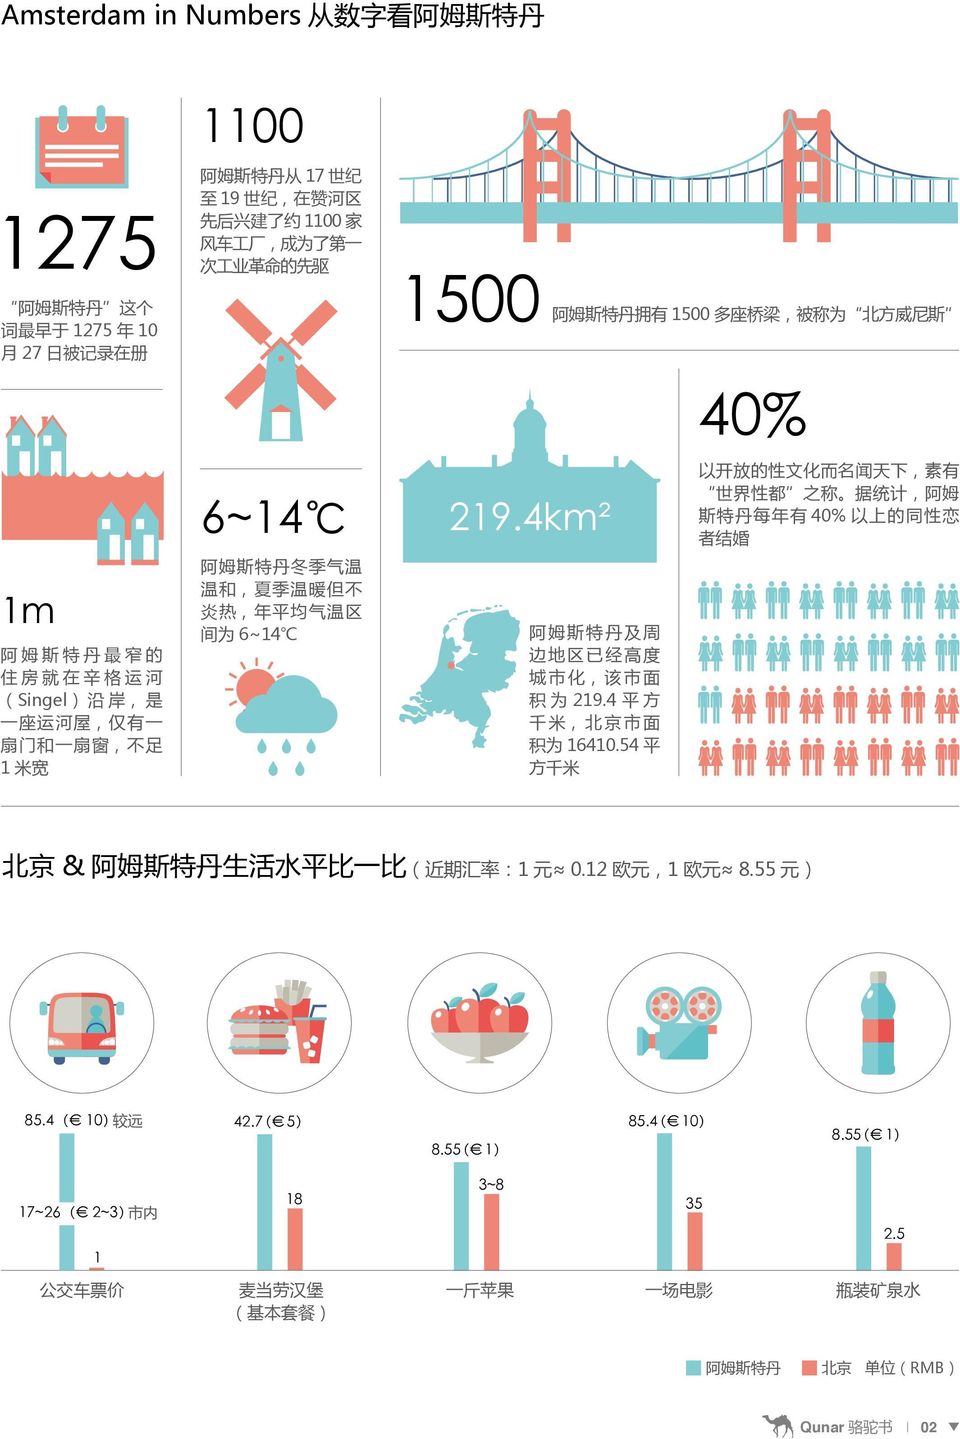 4km² 阿 姆 斯 特 丹 及 周 边 地 区 已 经 高 度 城 市 化, 该 市 面 积 为 219.4 平 方 千 米, 北 京 市 面 积 为 16410.